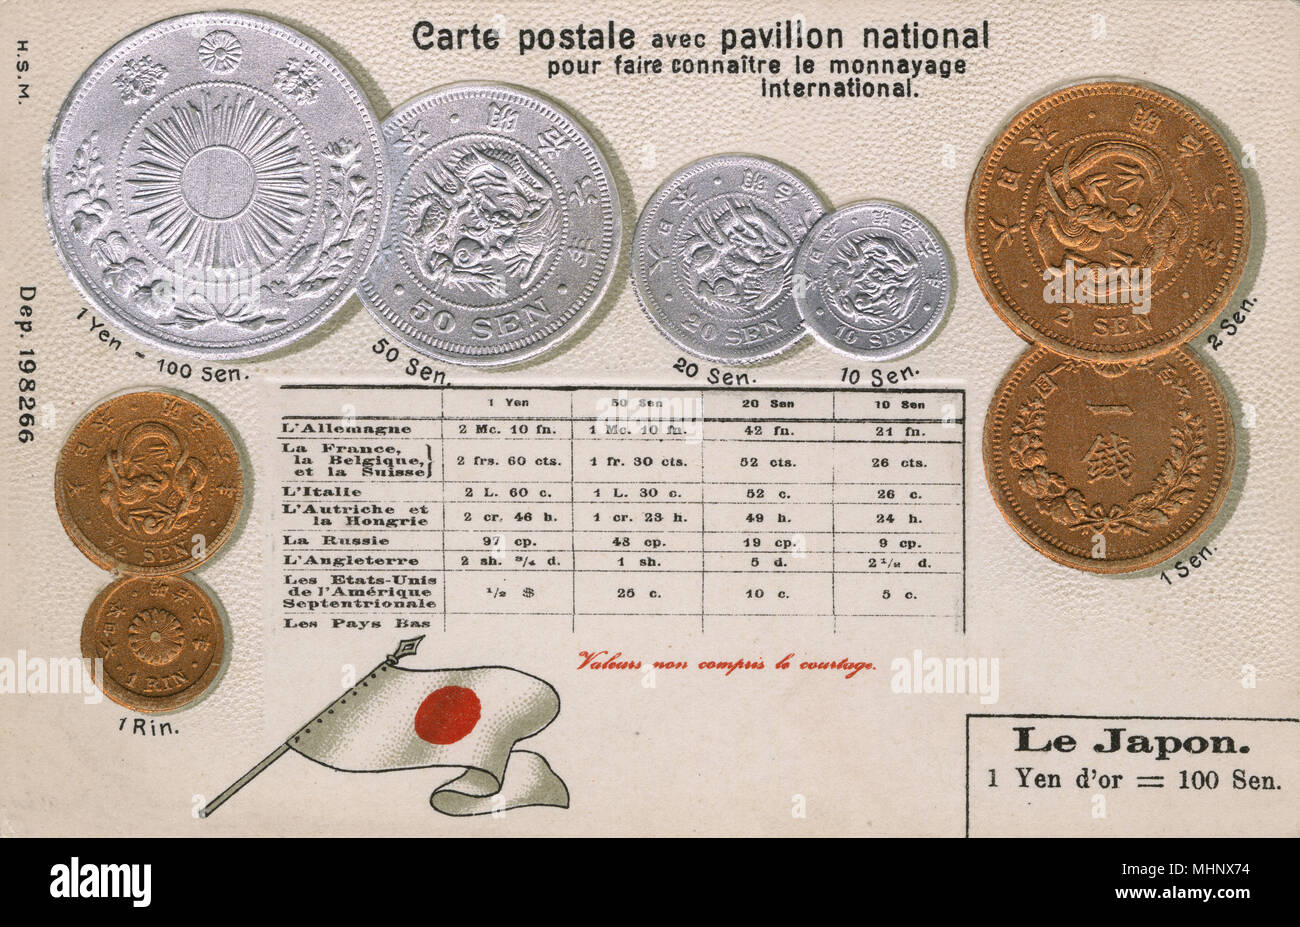 Carte postale expliquant la monnaie du Japon, avec des valeurs équivalentes pour les autres pays. Date : vers 1900 Banque D'Images